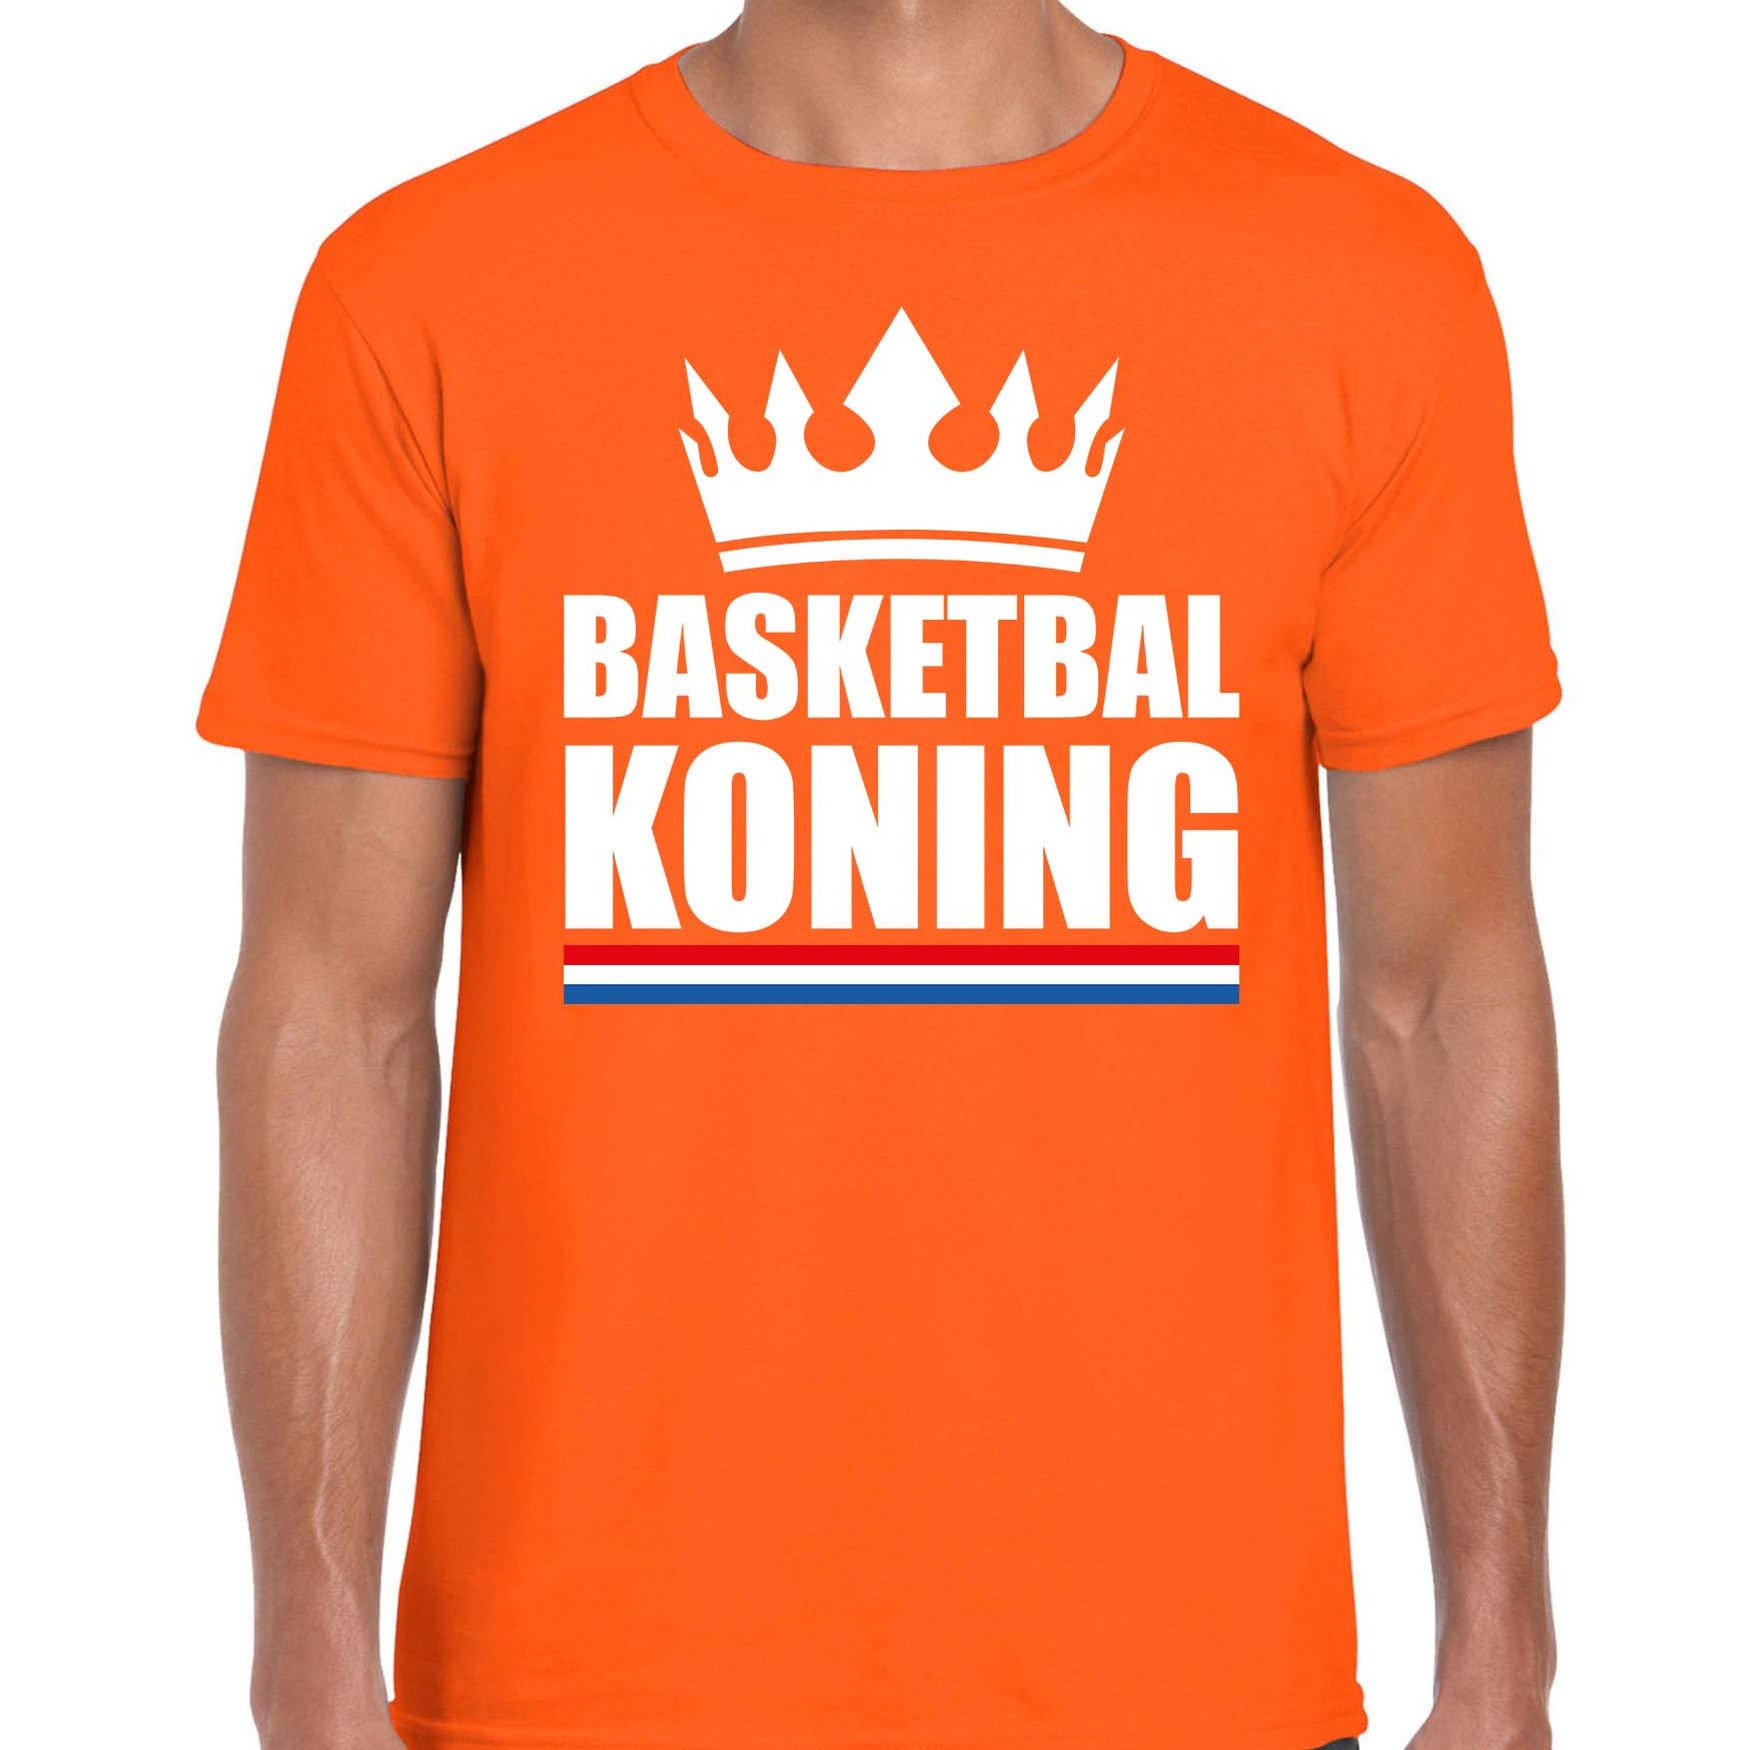 Basketbal koning t-shirt oranje heren Sport-hobby shirts